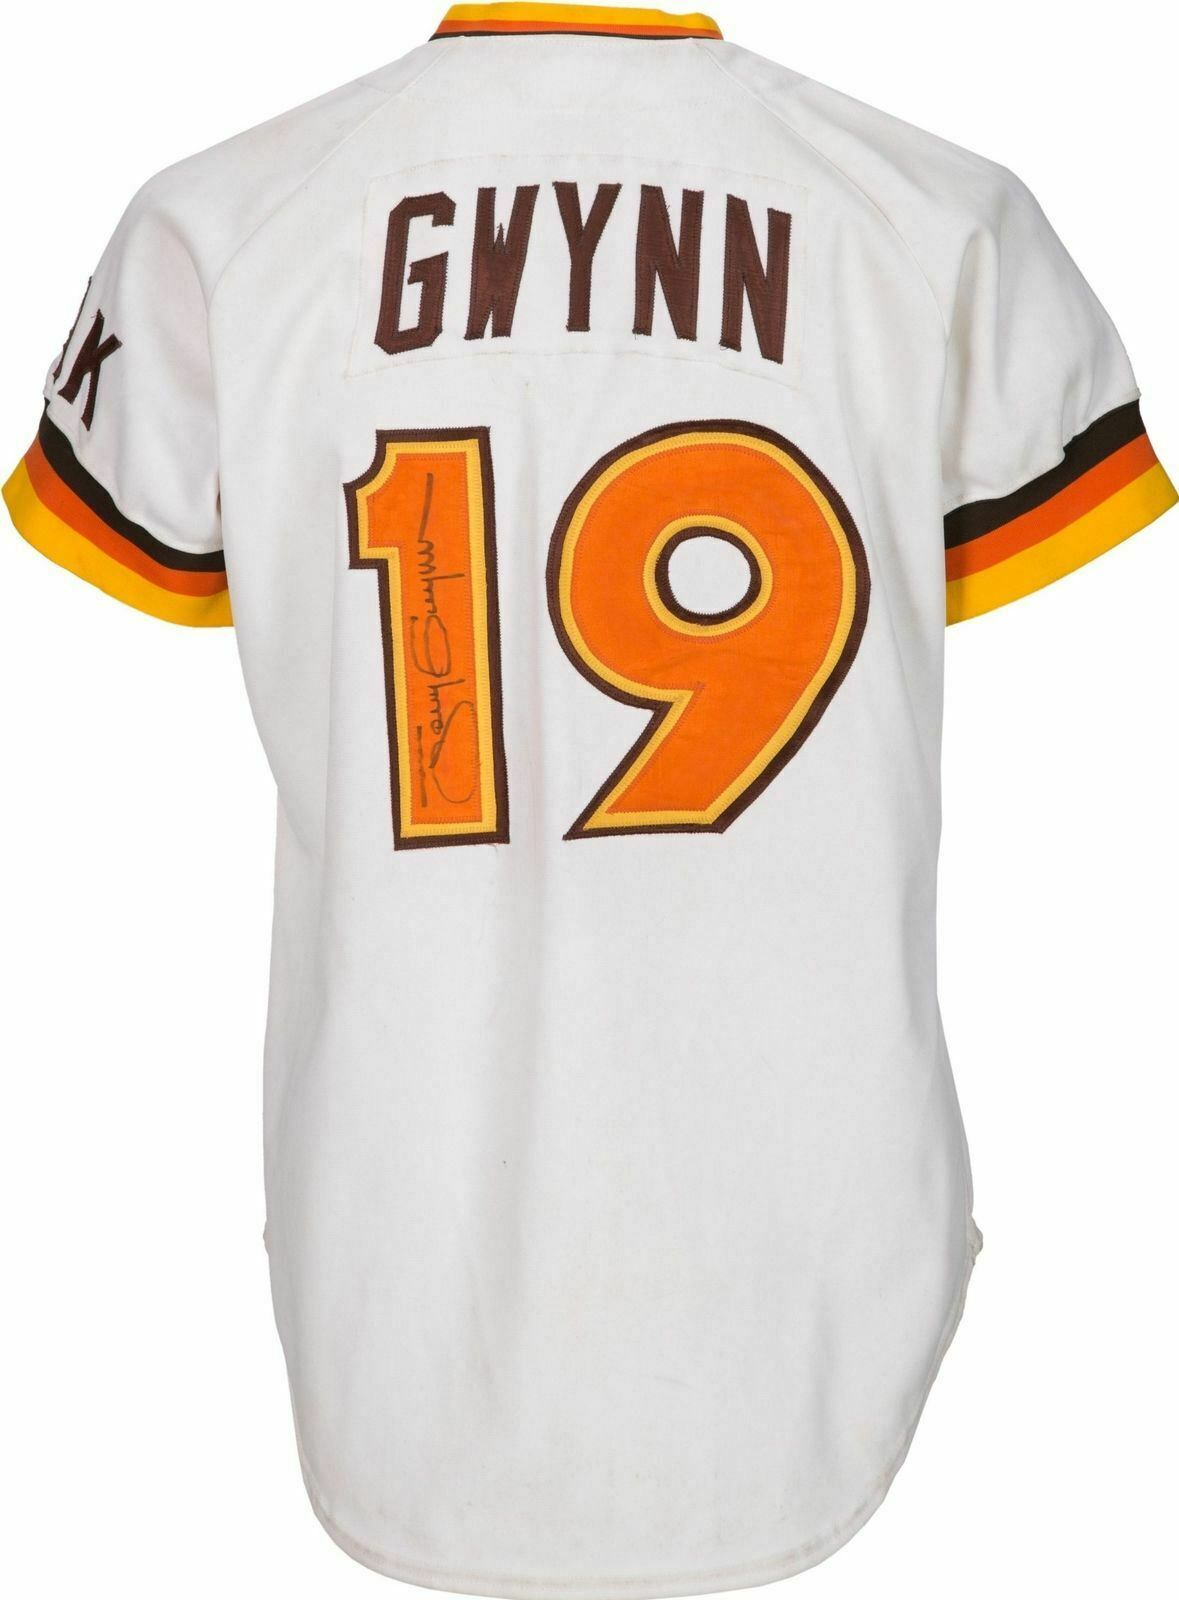 1984 tony gwynn jersey